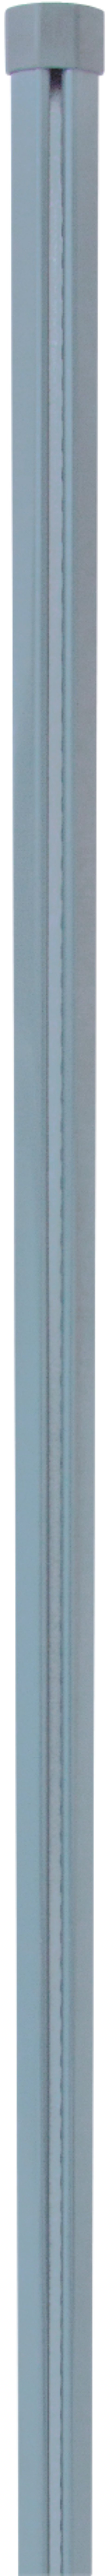 H+S Zwischensäule für Dübelplatte verzinkt 0,8 m